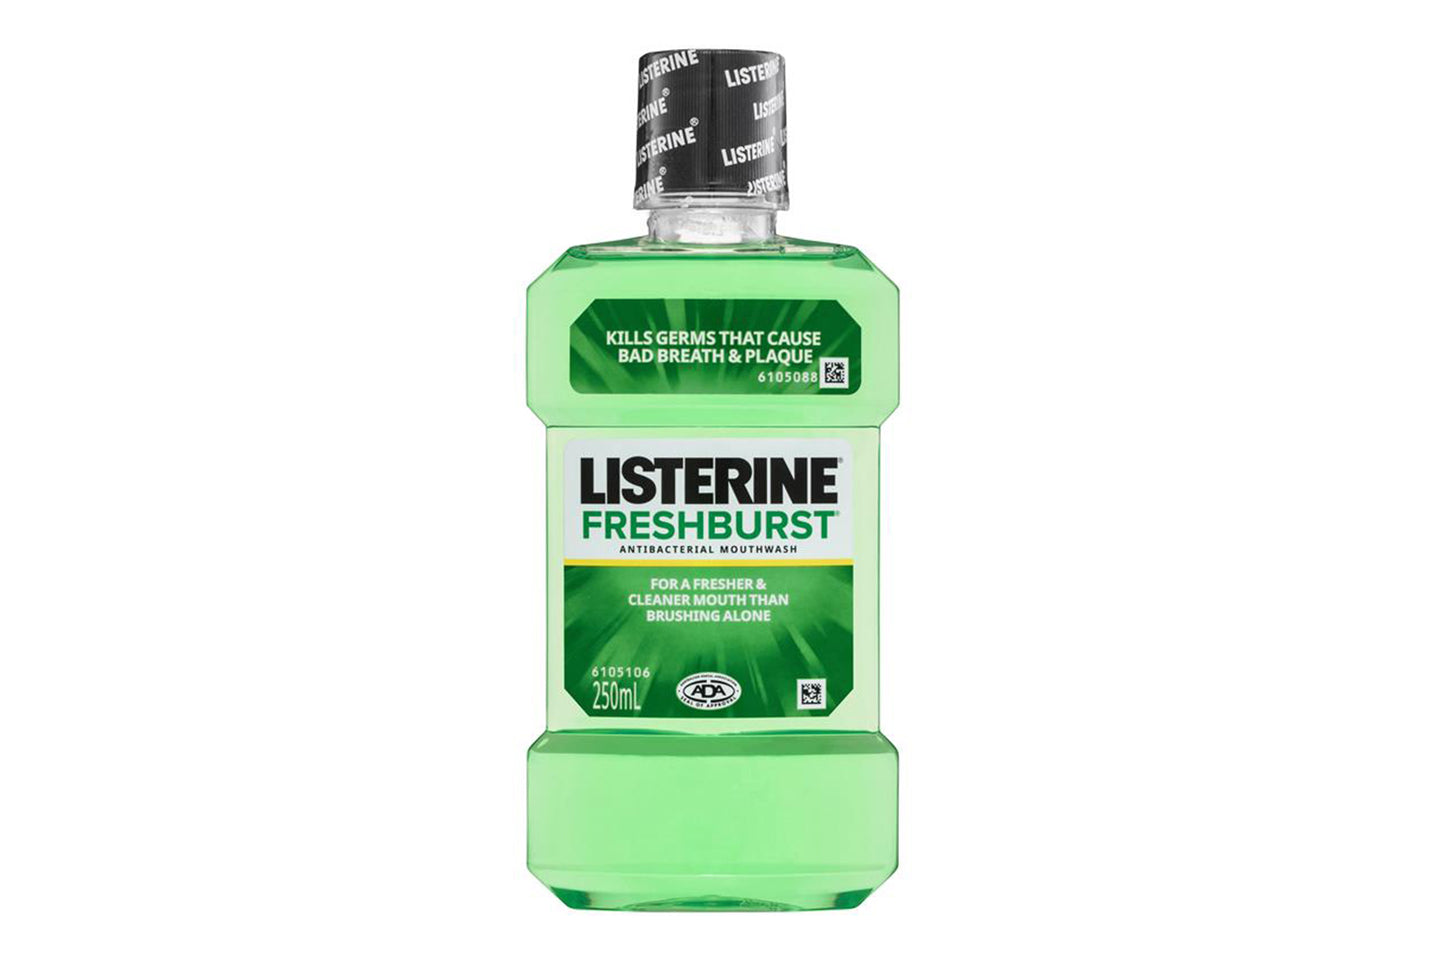 Listerine - Mouth Wash Fresh Burst (250ML/ 8.45FL OZ.)